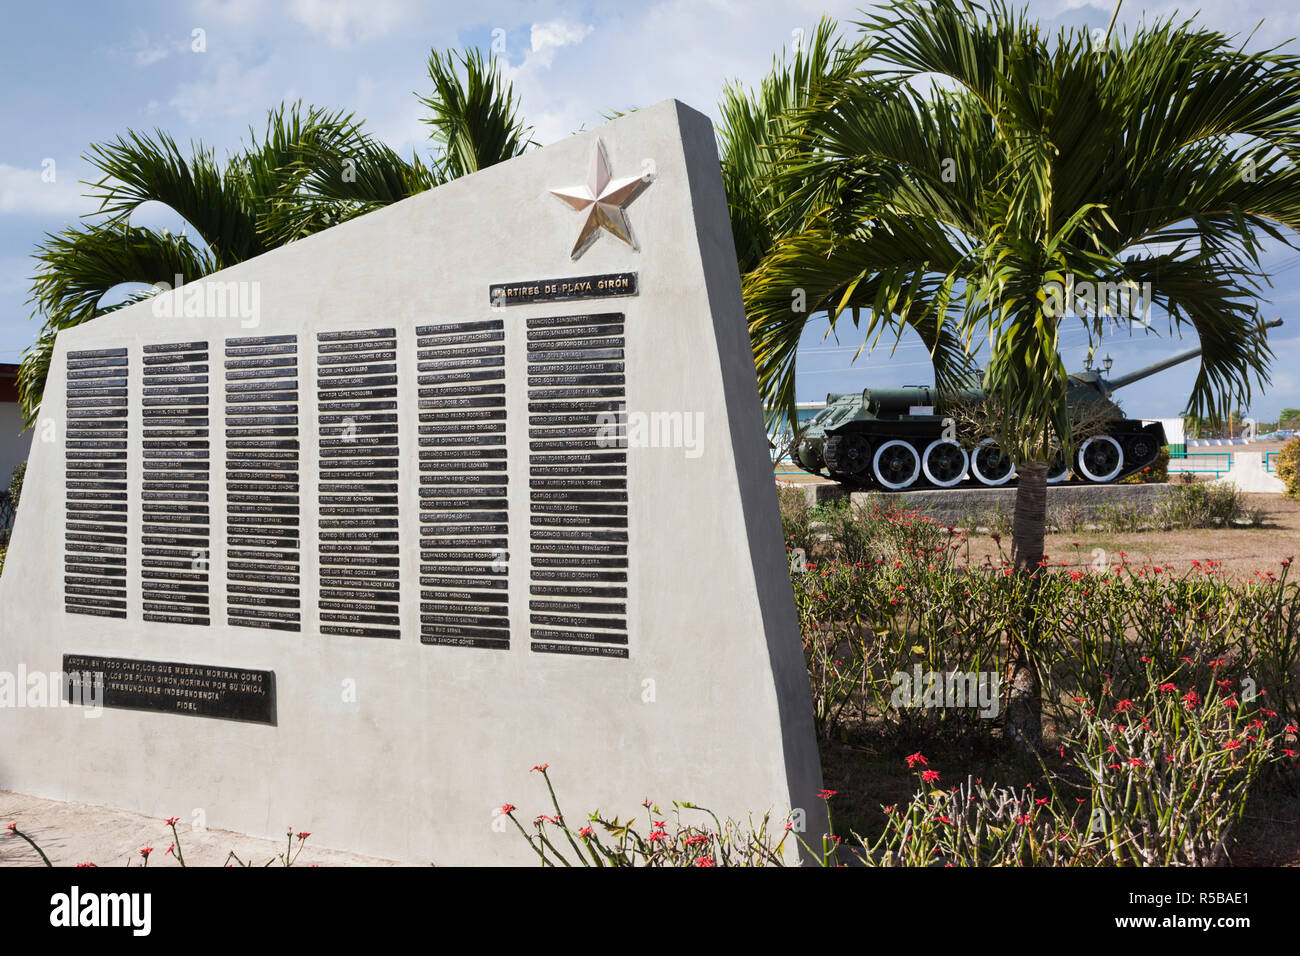 Cuba, province de Matanzas, Playa Giron, Museo de Playa Giron, musée de l'US-led 1961 CIA, l'invasion de la Baie des Cochons martyrs monument aux soldats Cubains tués pendant l'invasion Banque D'Images